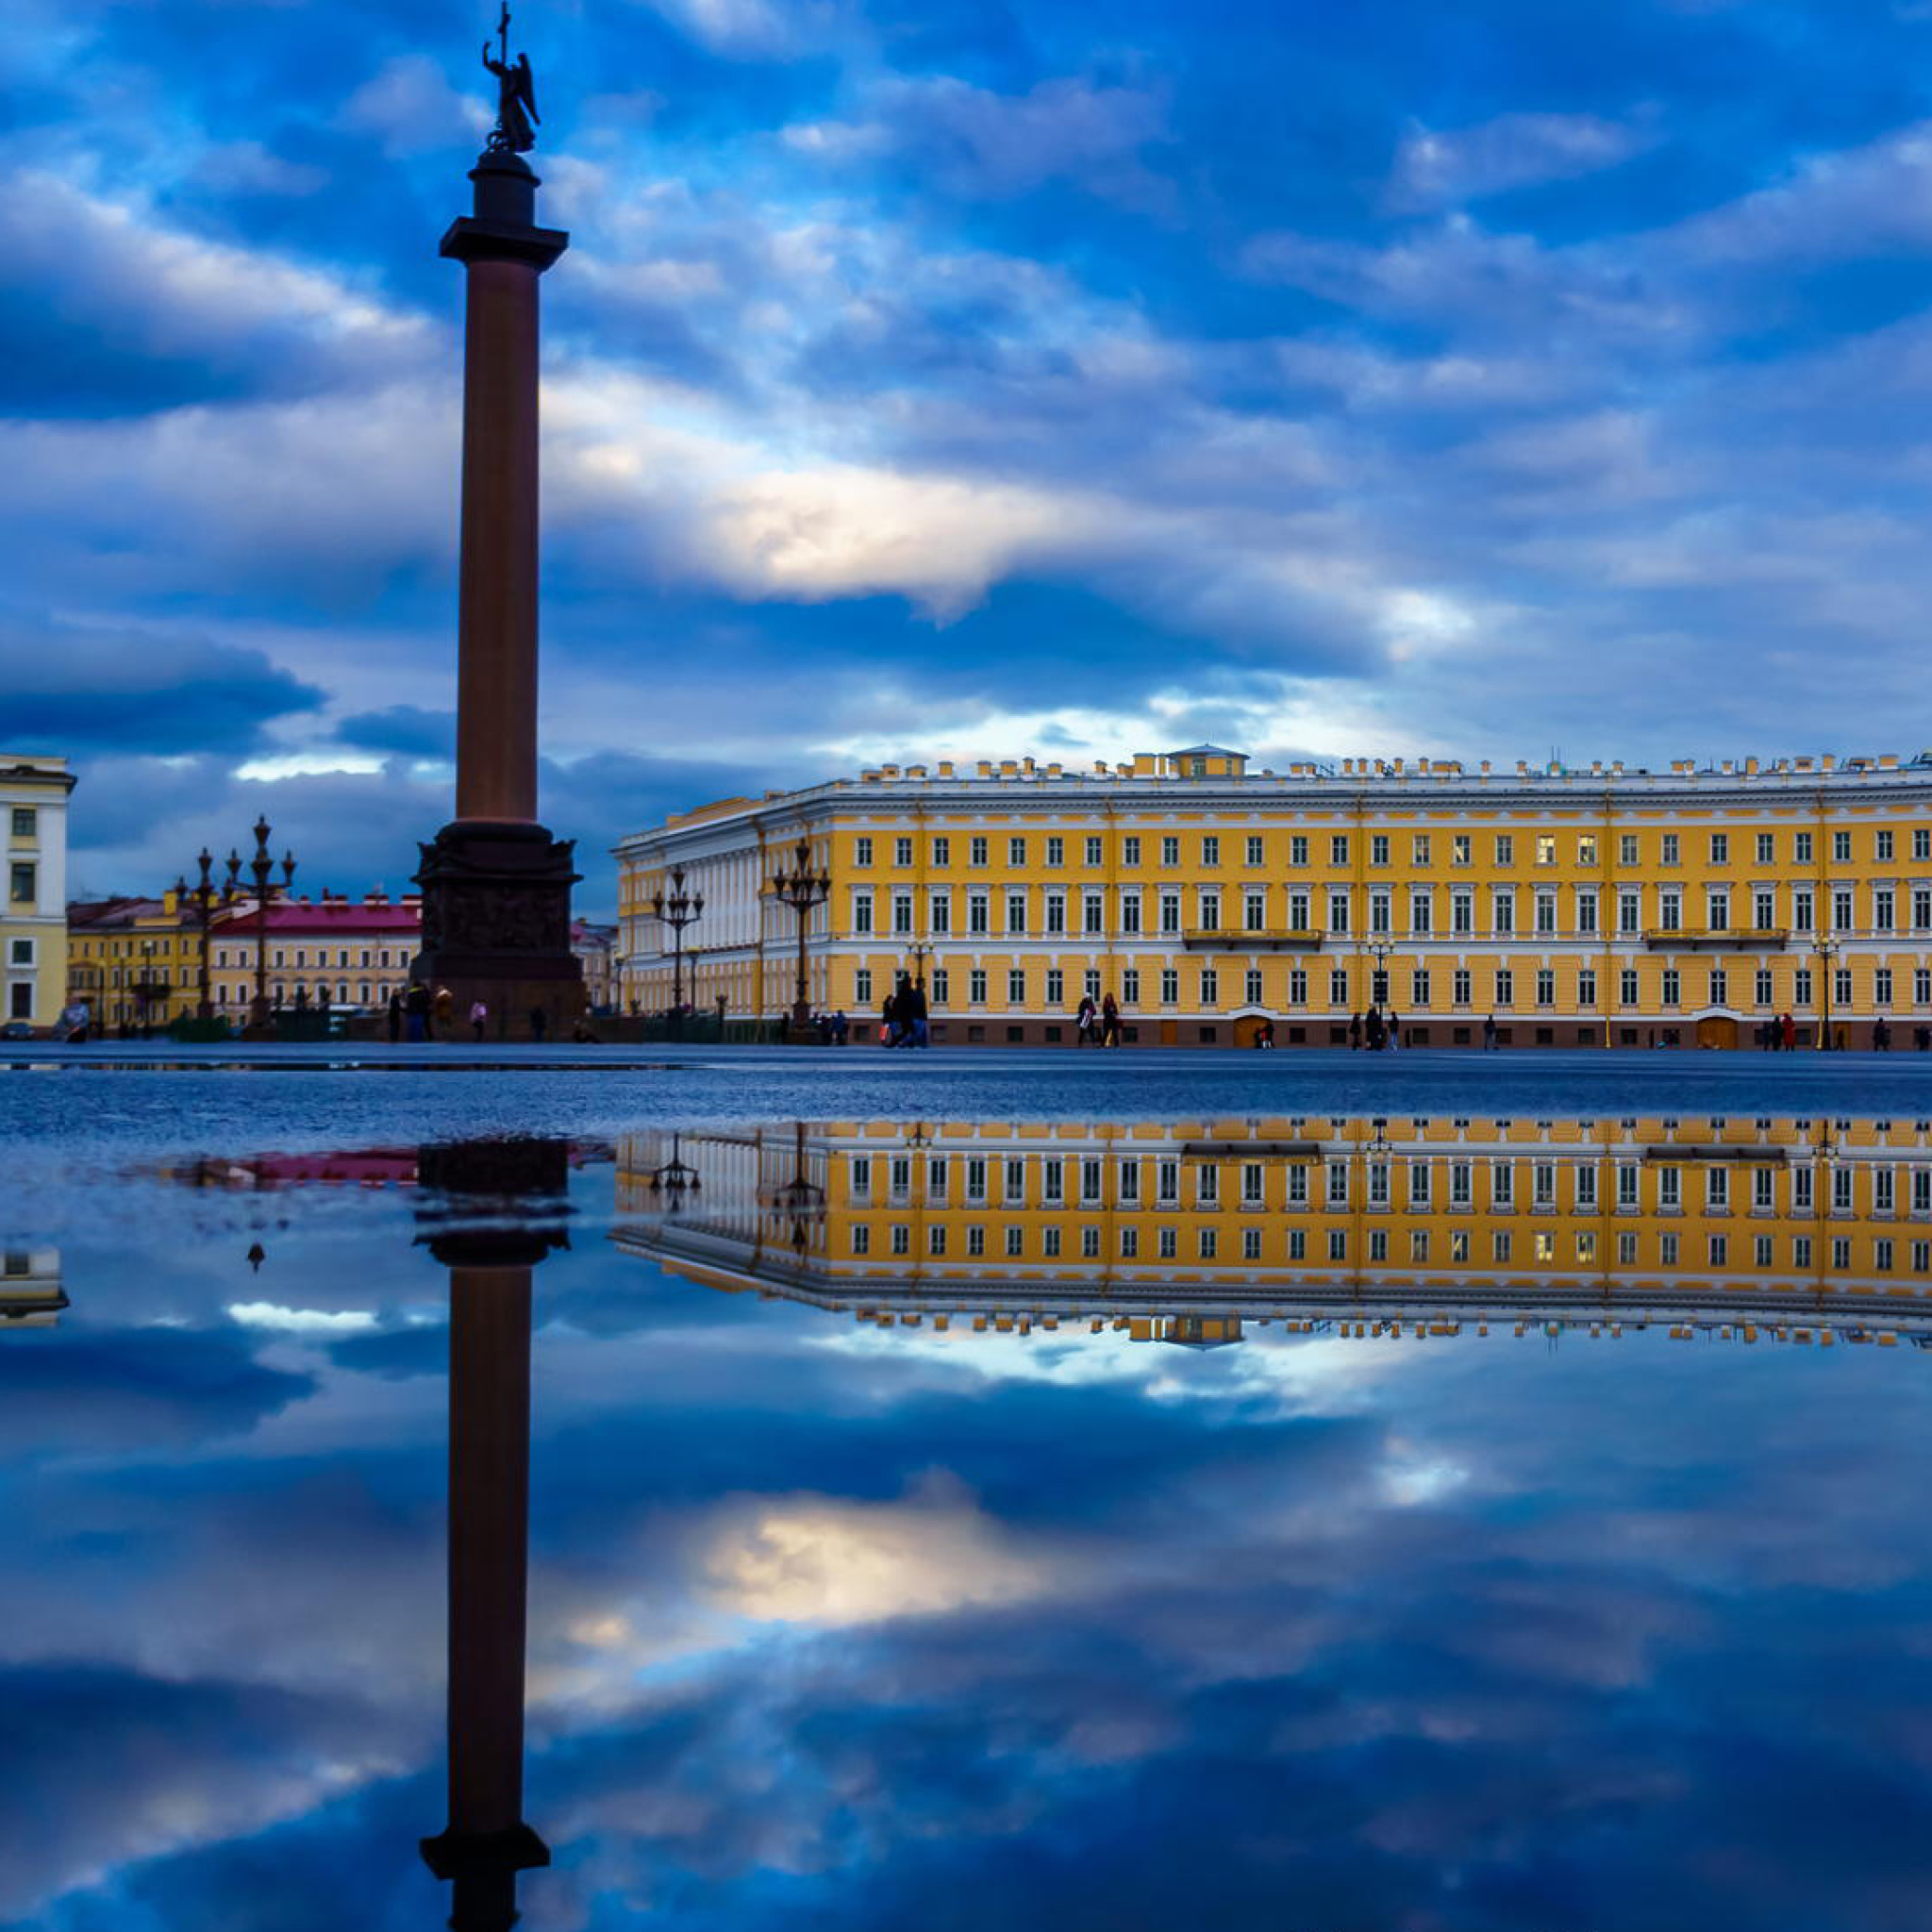 Das Saint Petersburg, Winter Palace, Alexander Column Wallpaper 2048x2048